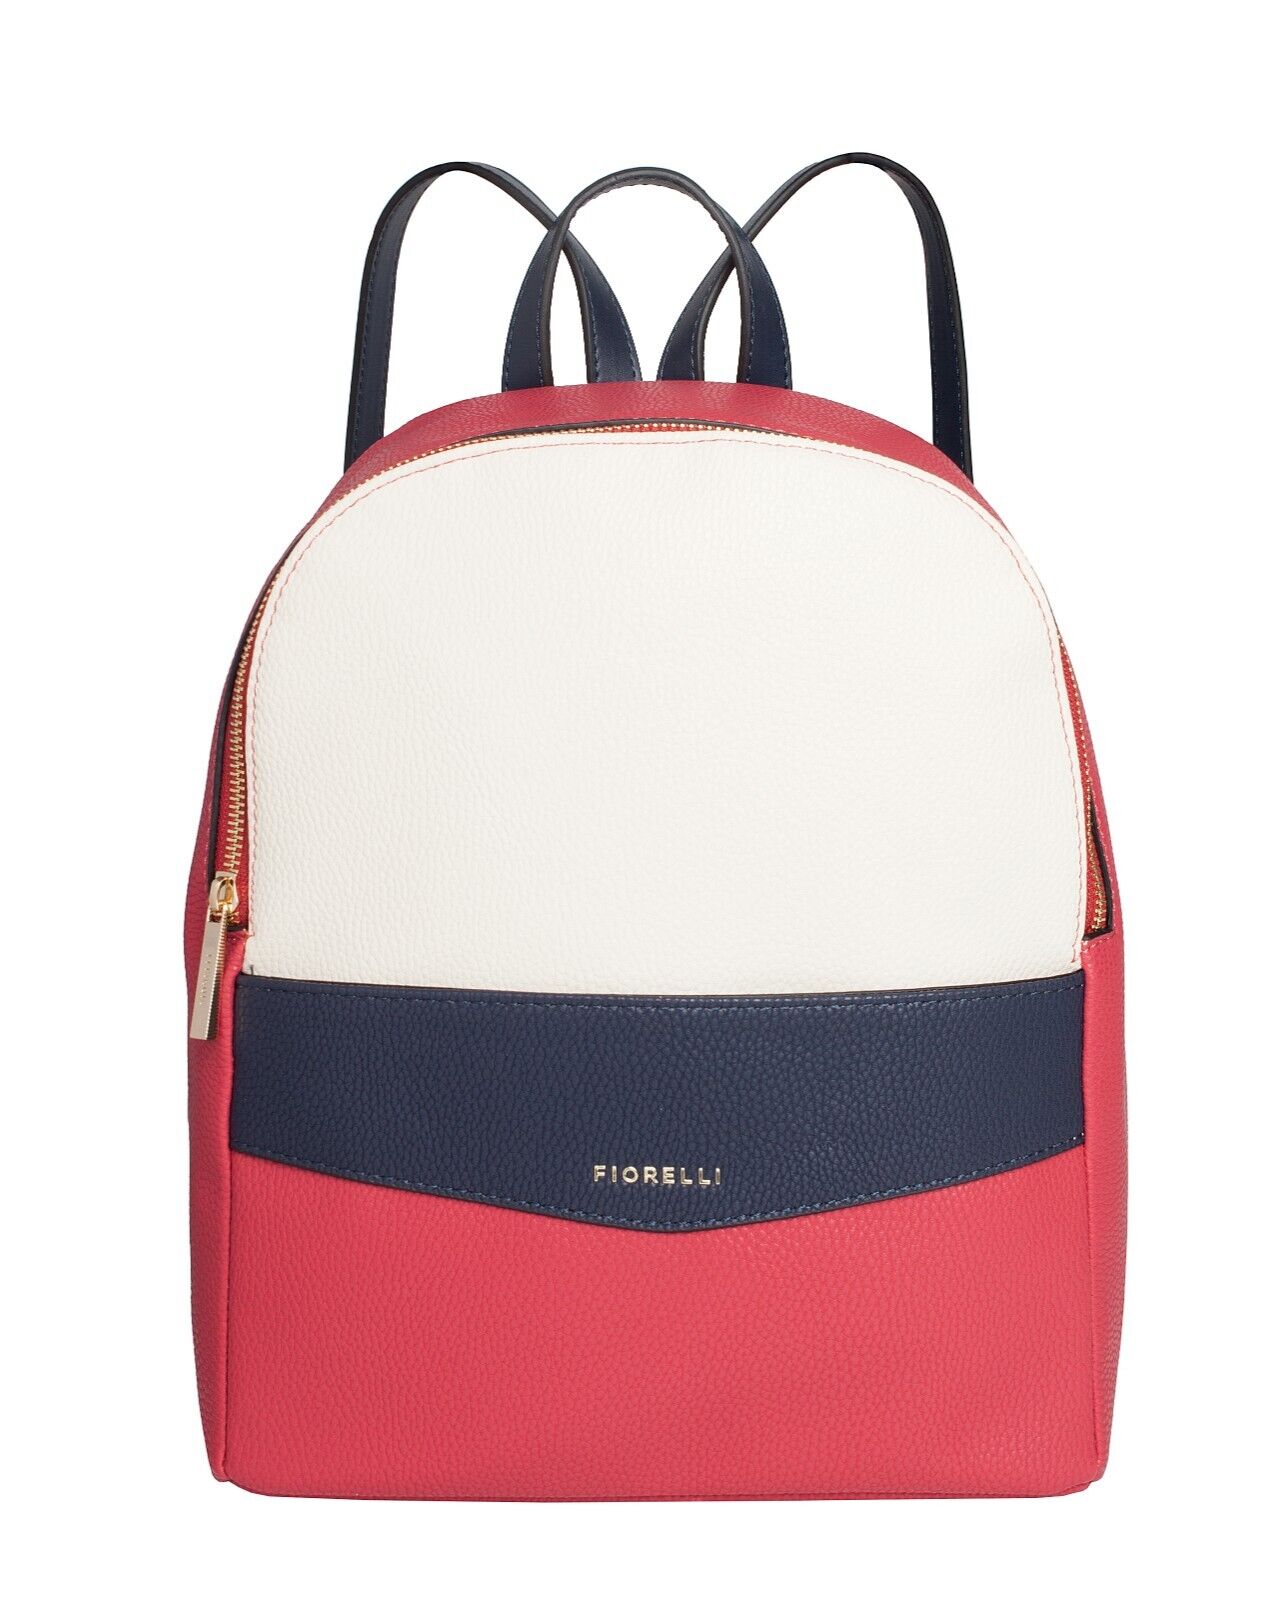 Fiorelli Trenton Nautical Backpack Medium RRP £65